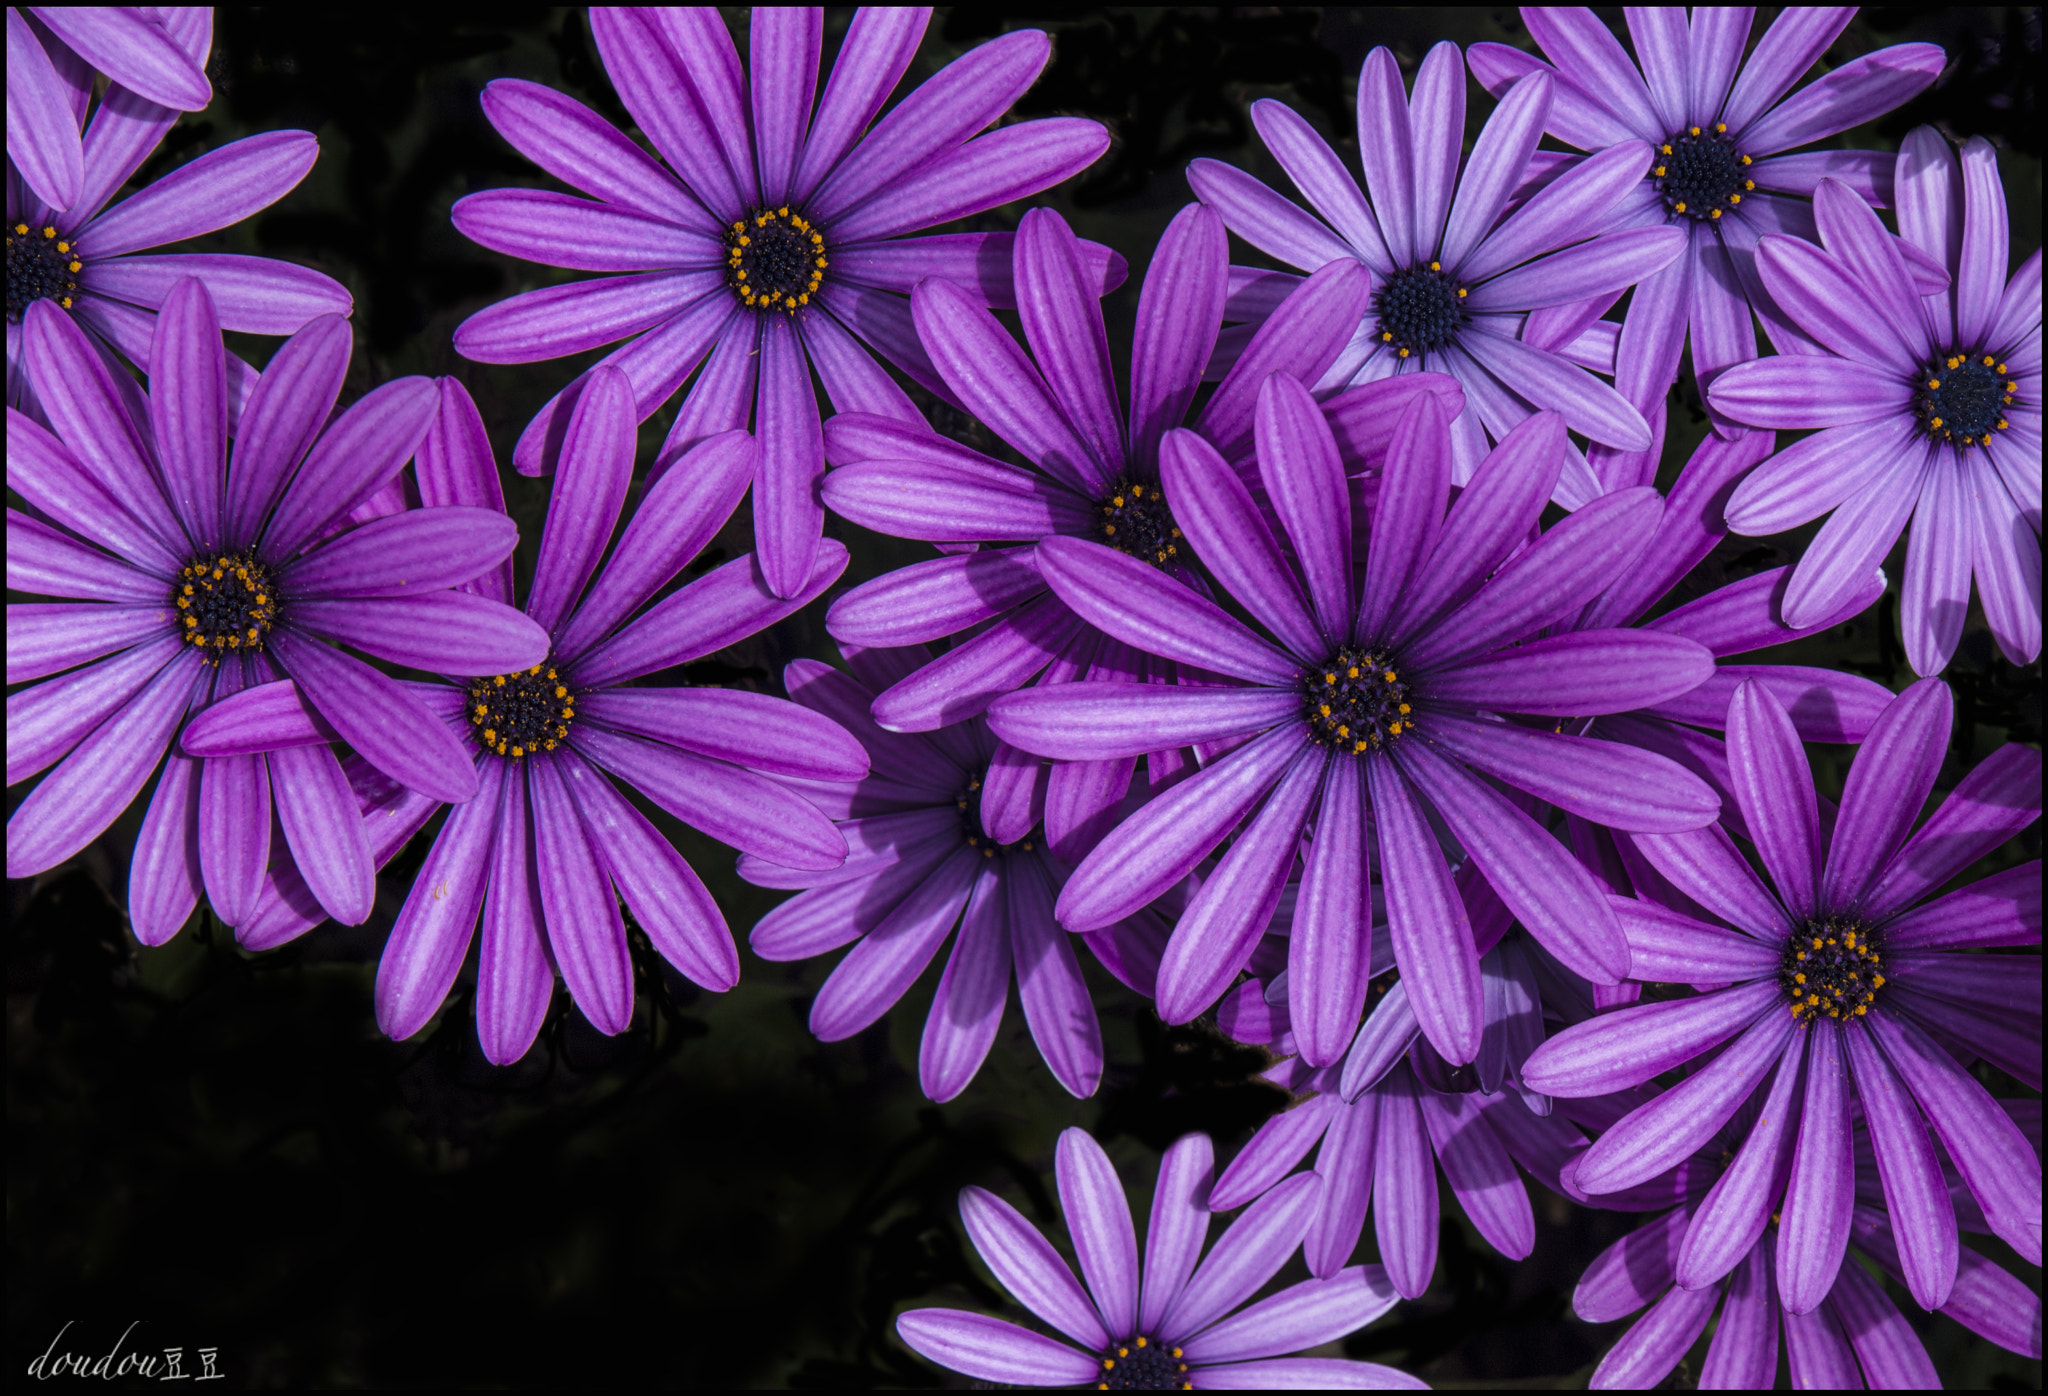 Nikon D80 + AF Zoom-Nikkor 28-200mm f/3.5-5.6G IF-ED sample photo. Purple flower photography